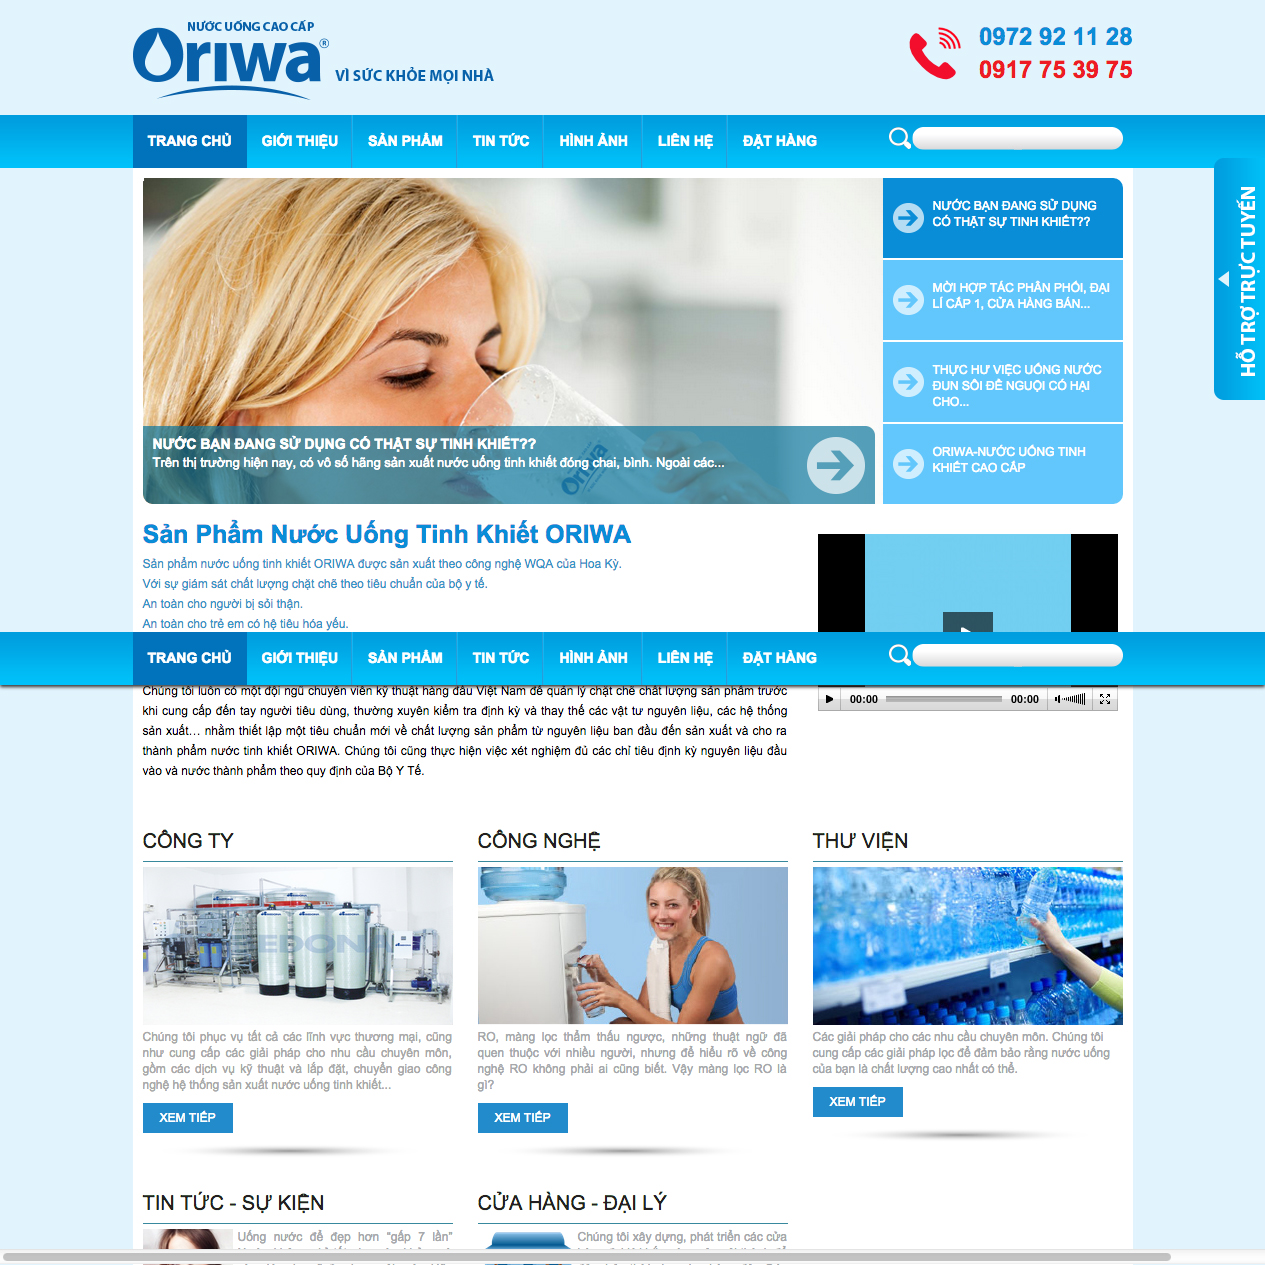 Thiết kế web công ty Oriwa